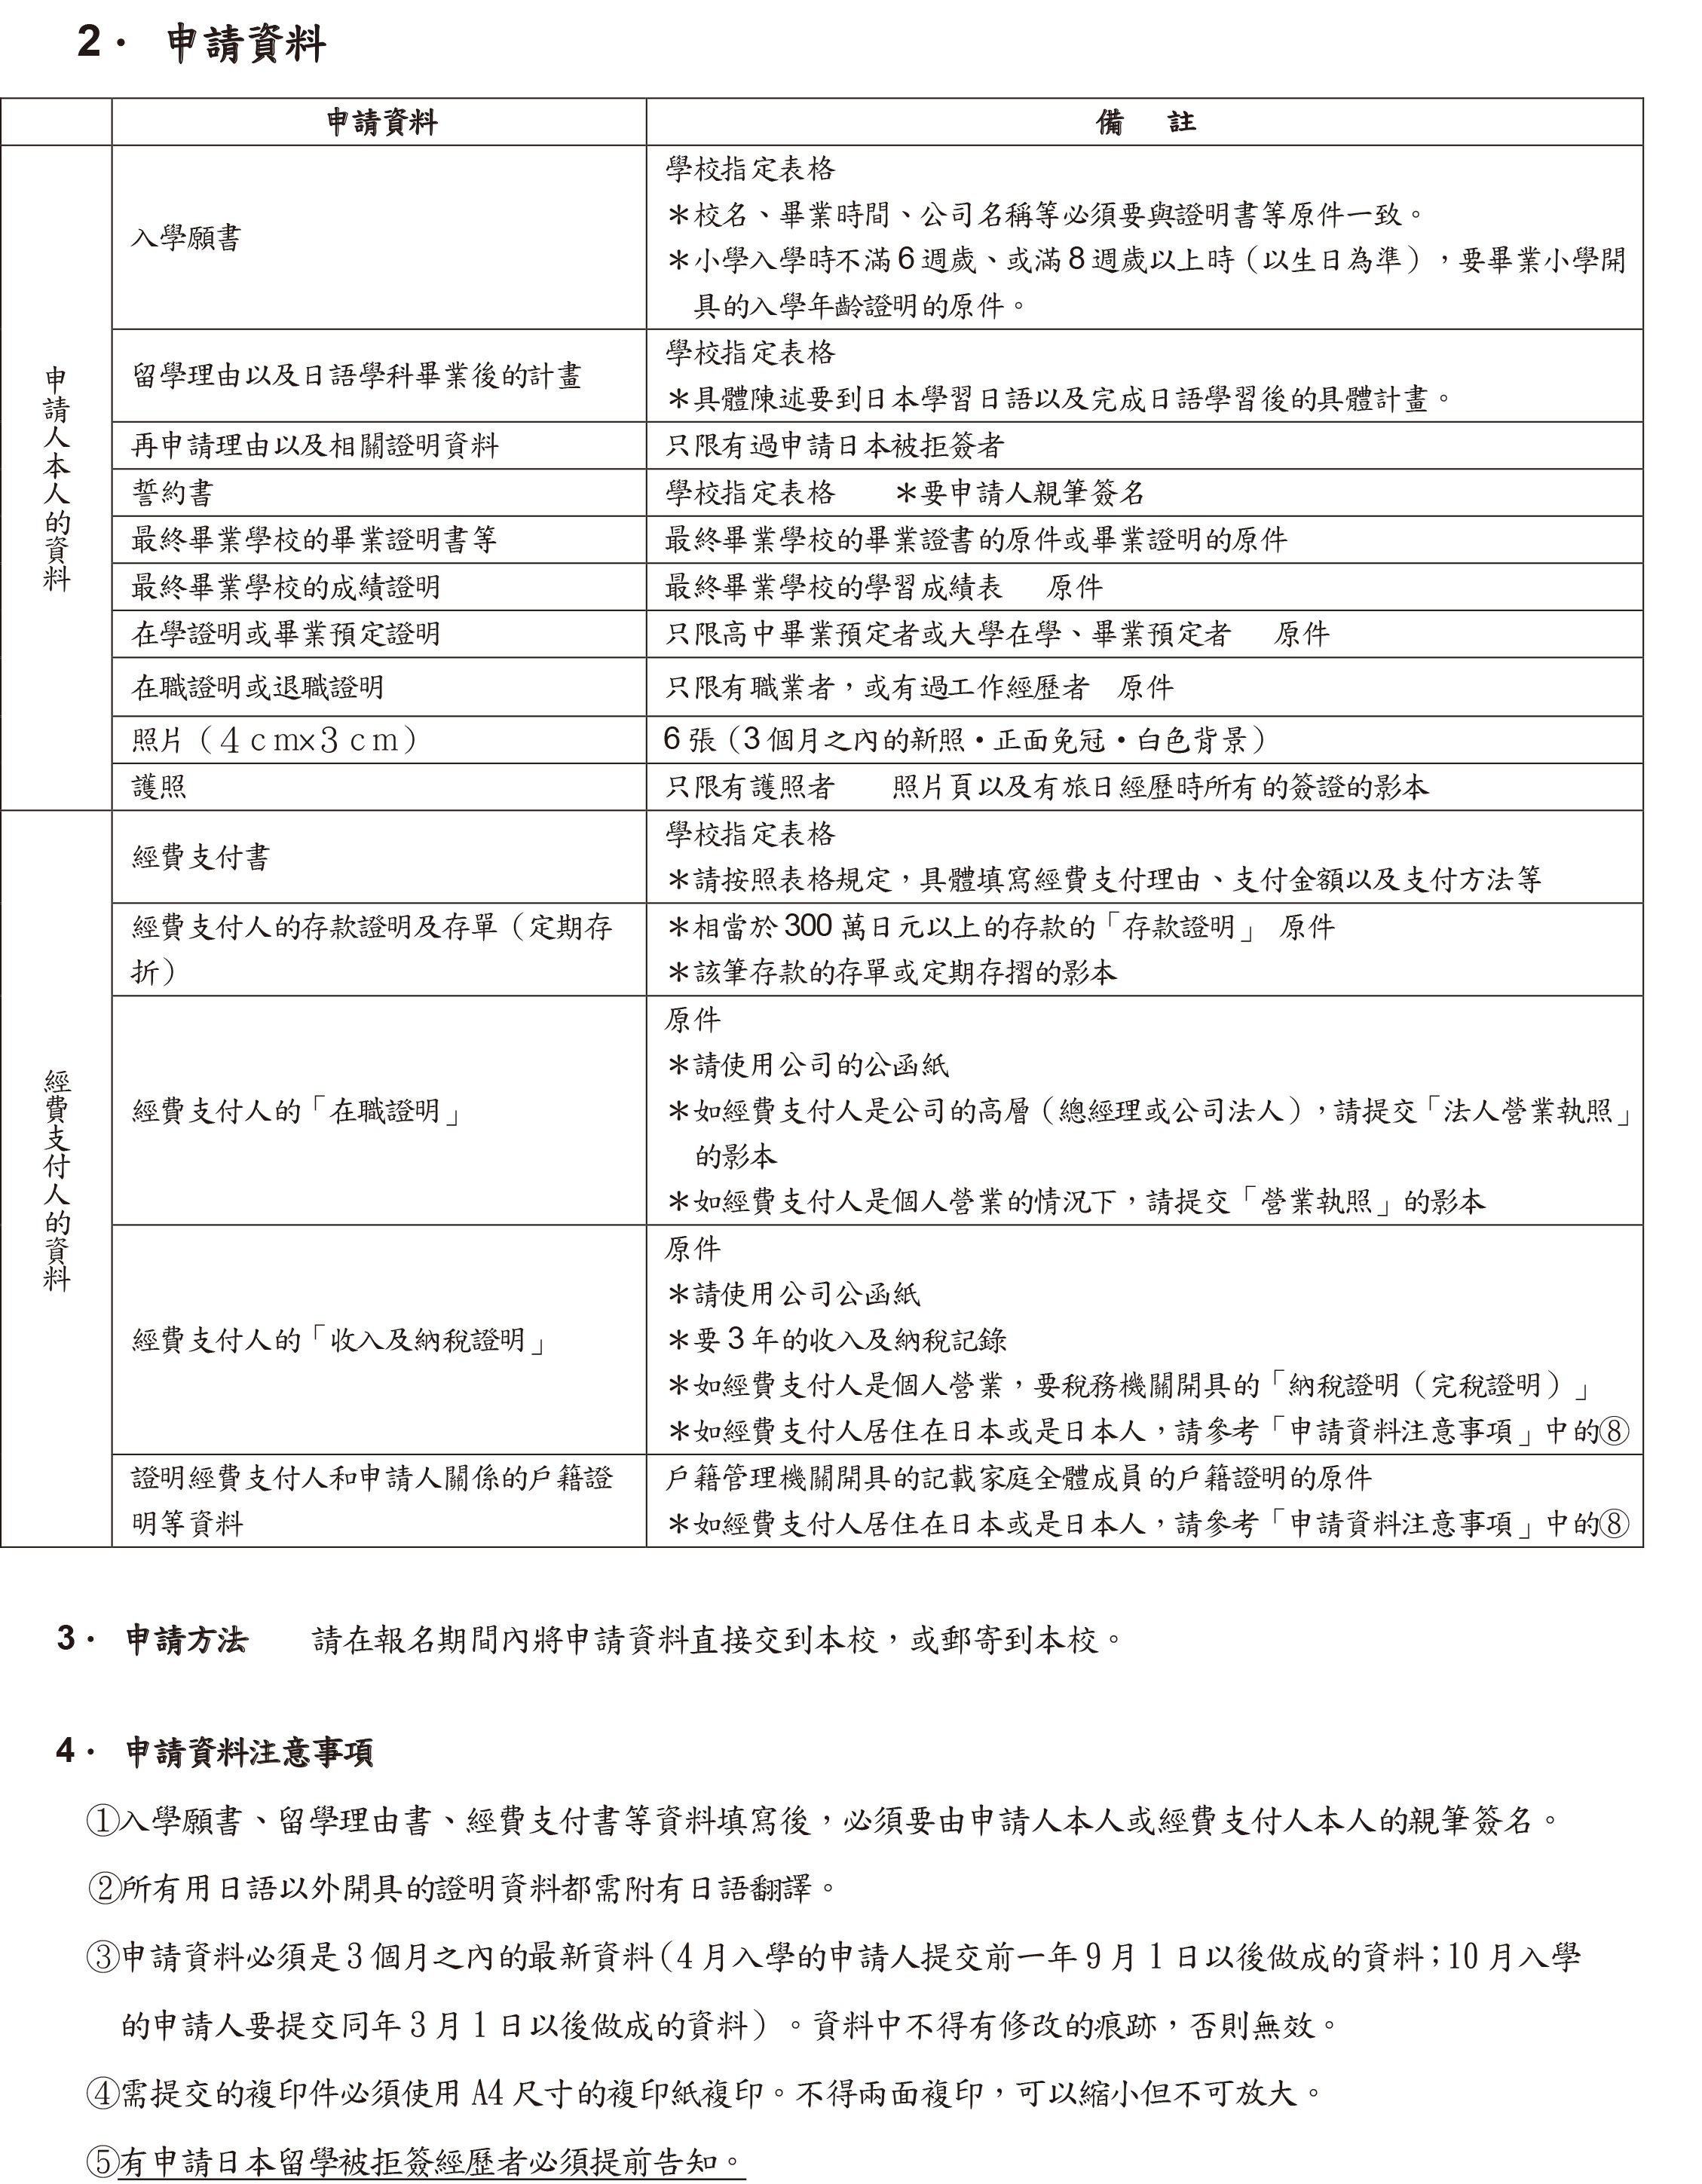 日本留學申請流程及簡章-招生簡章